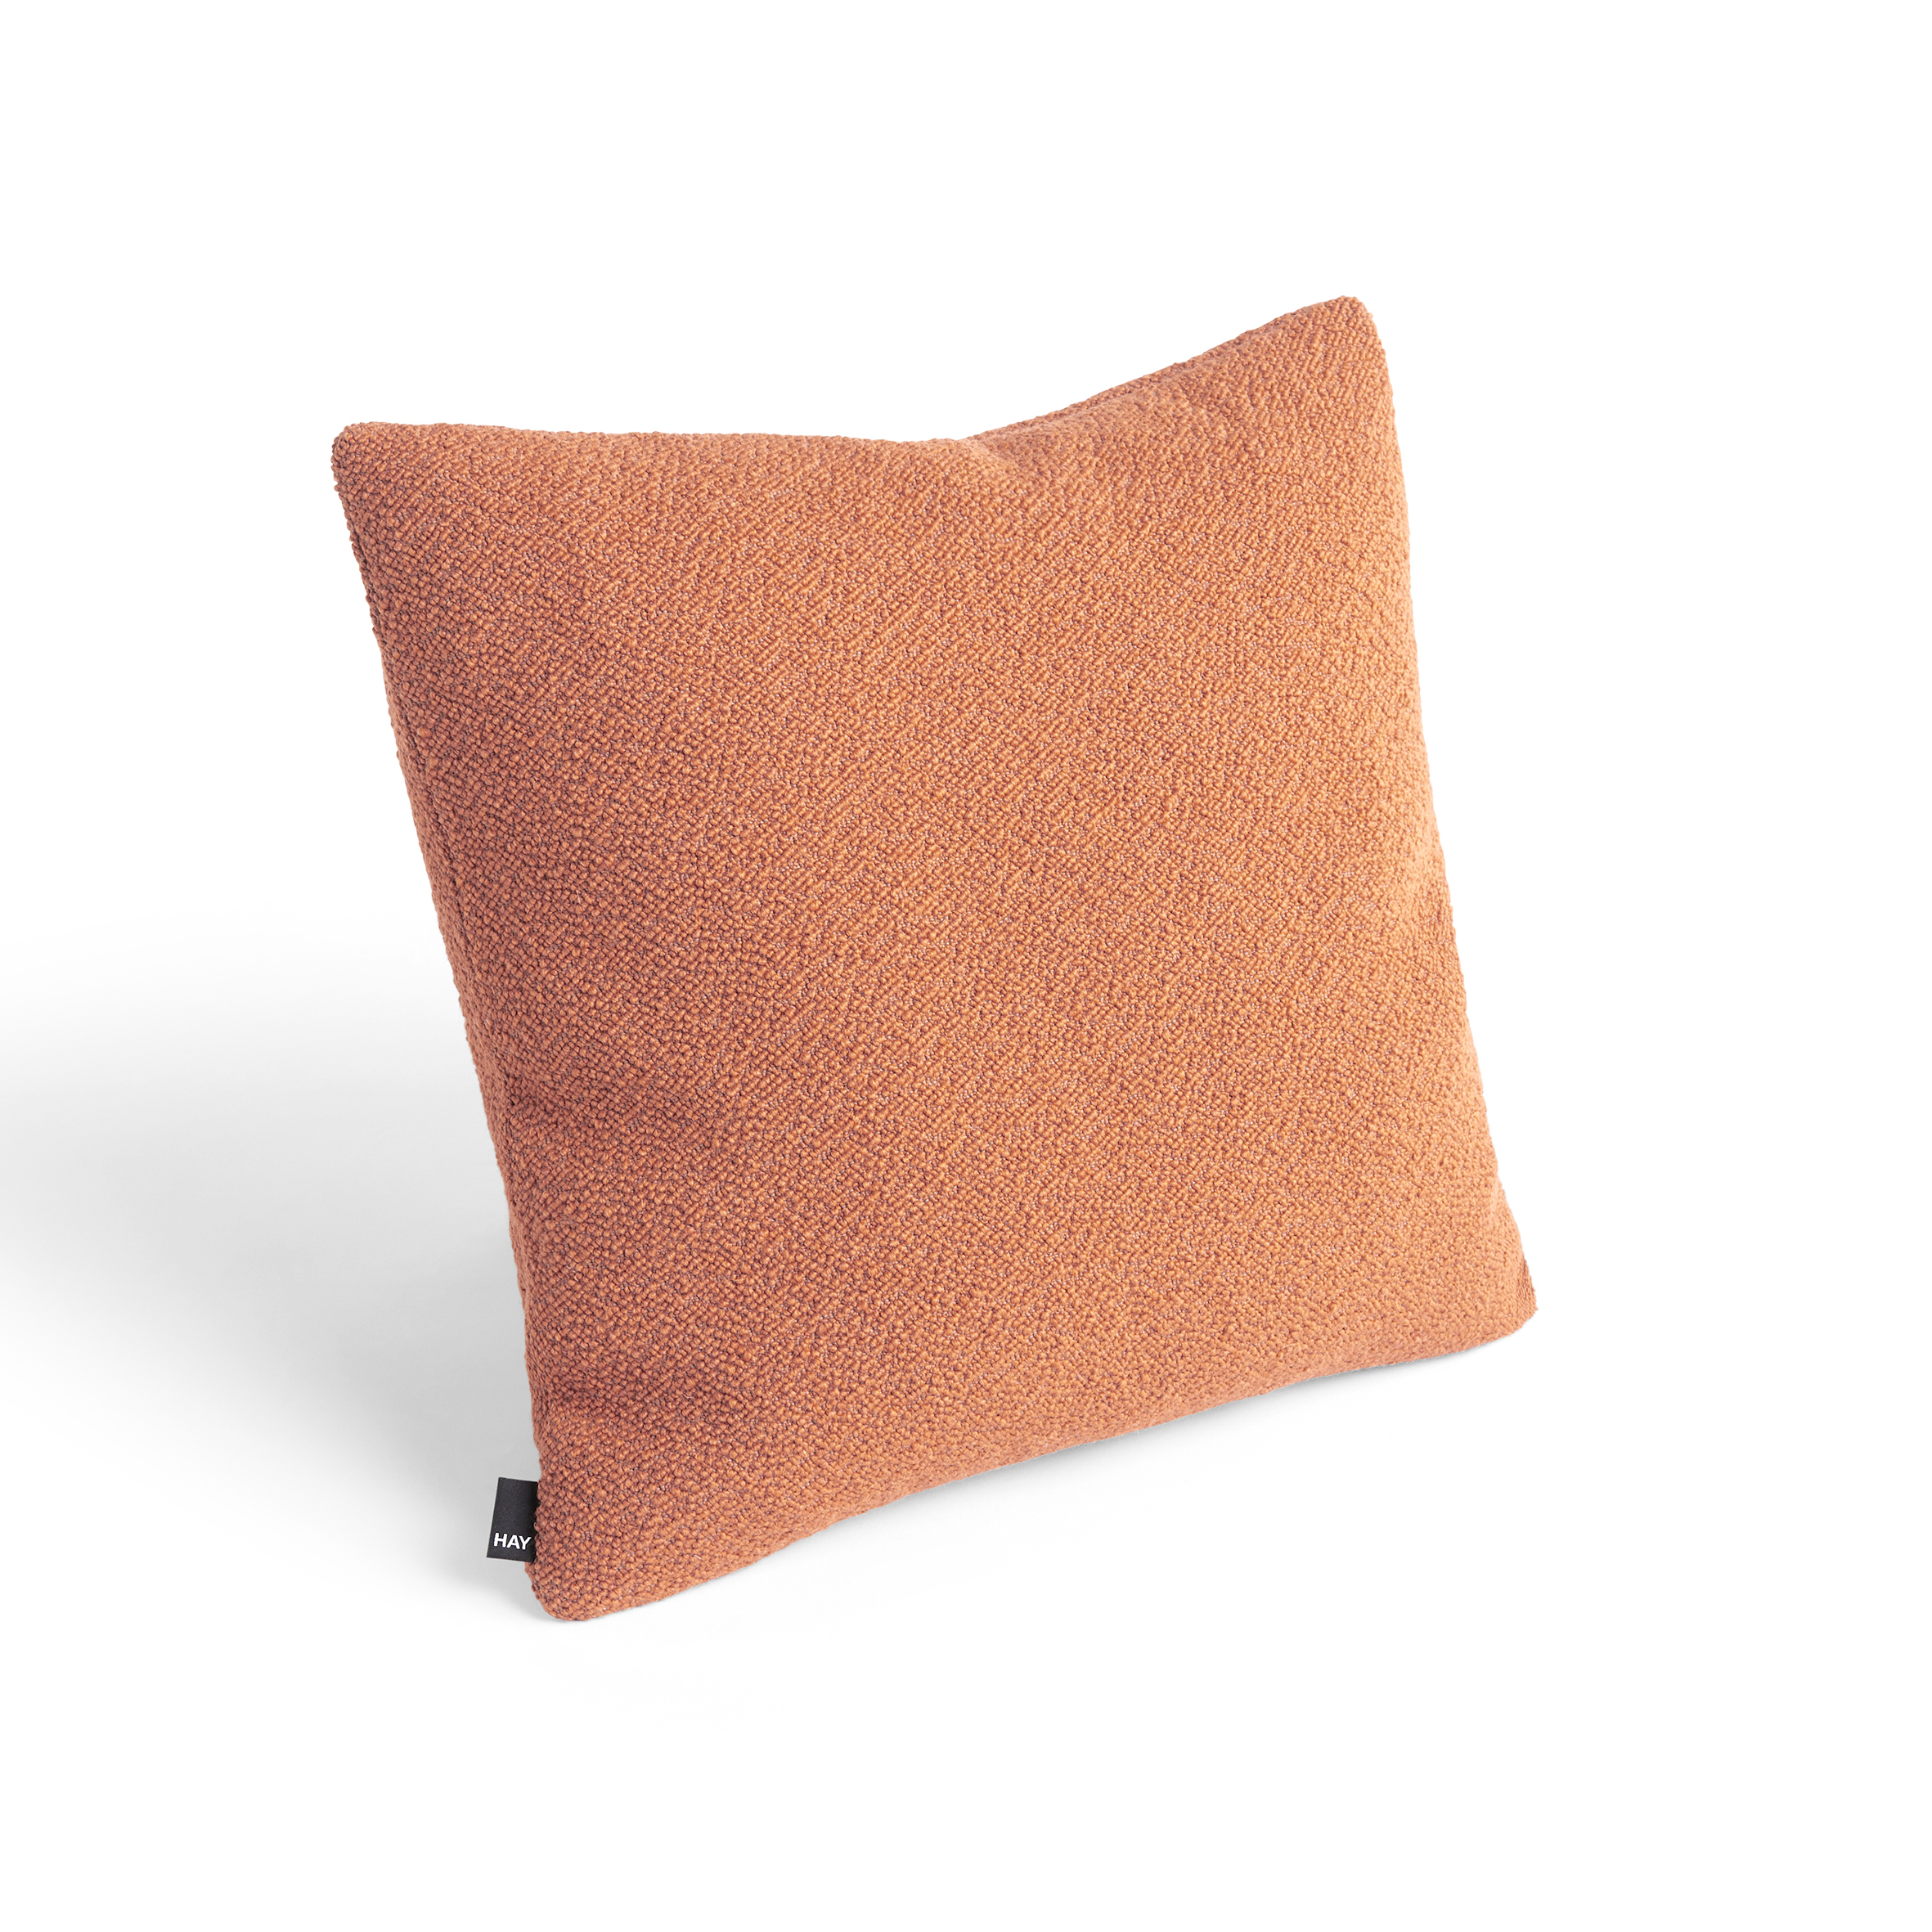 Texture cushion - Mandarin